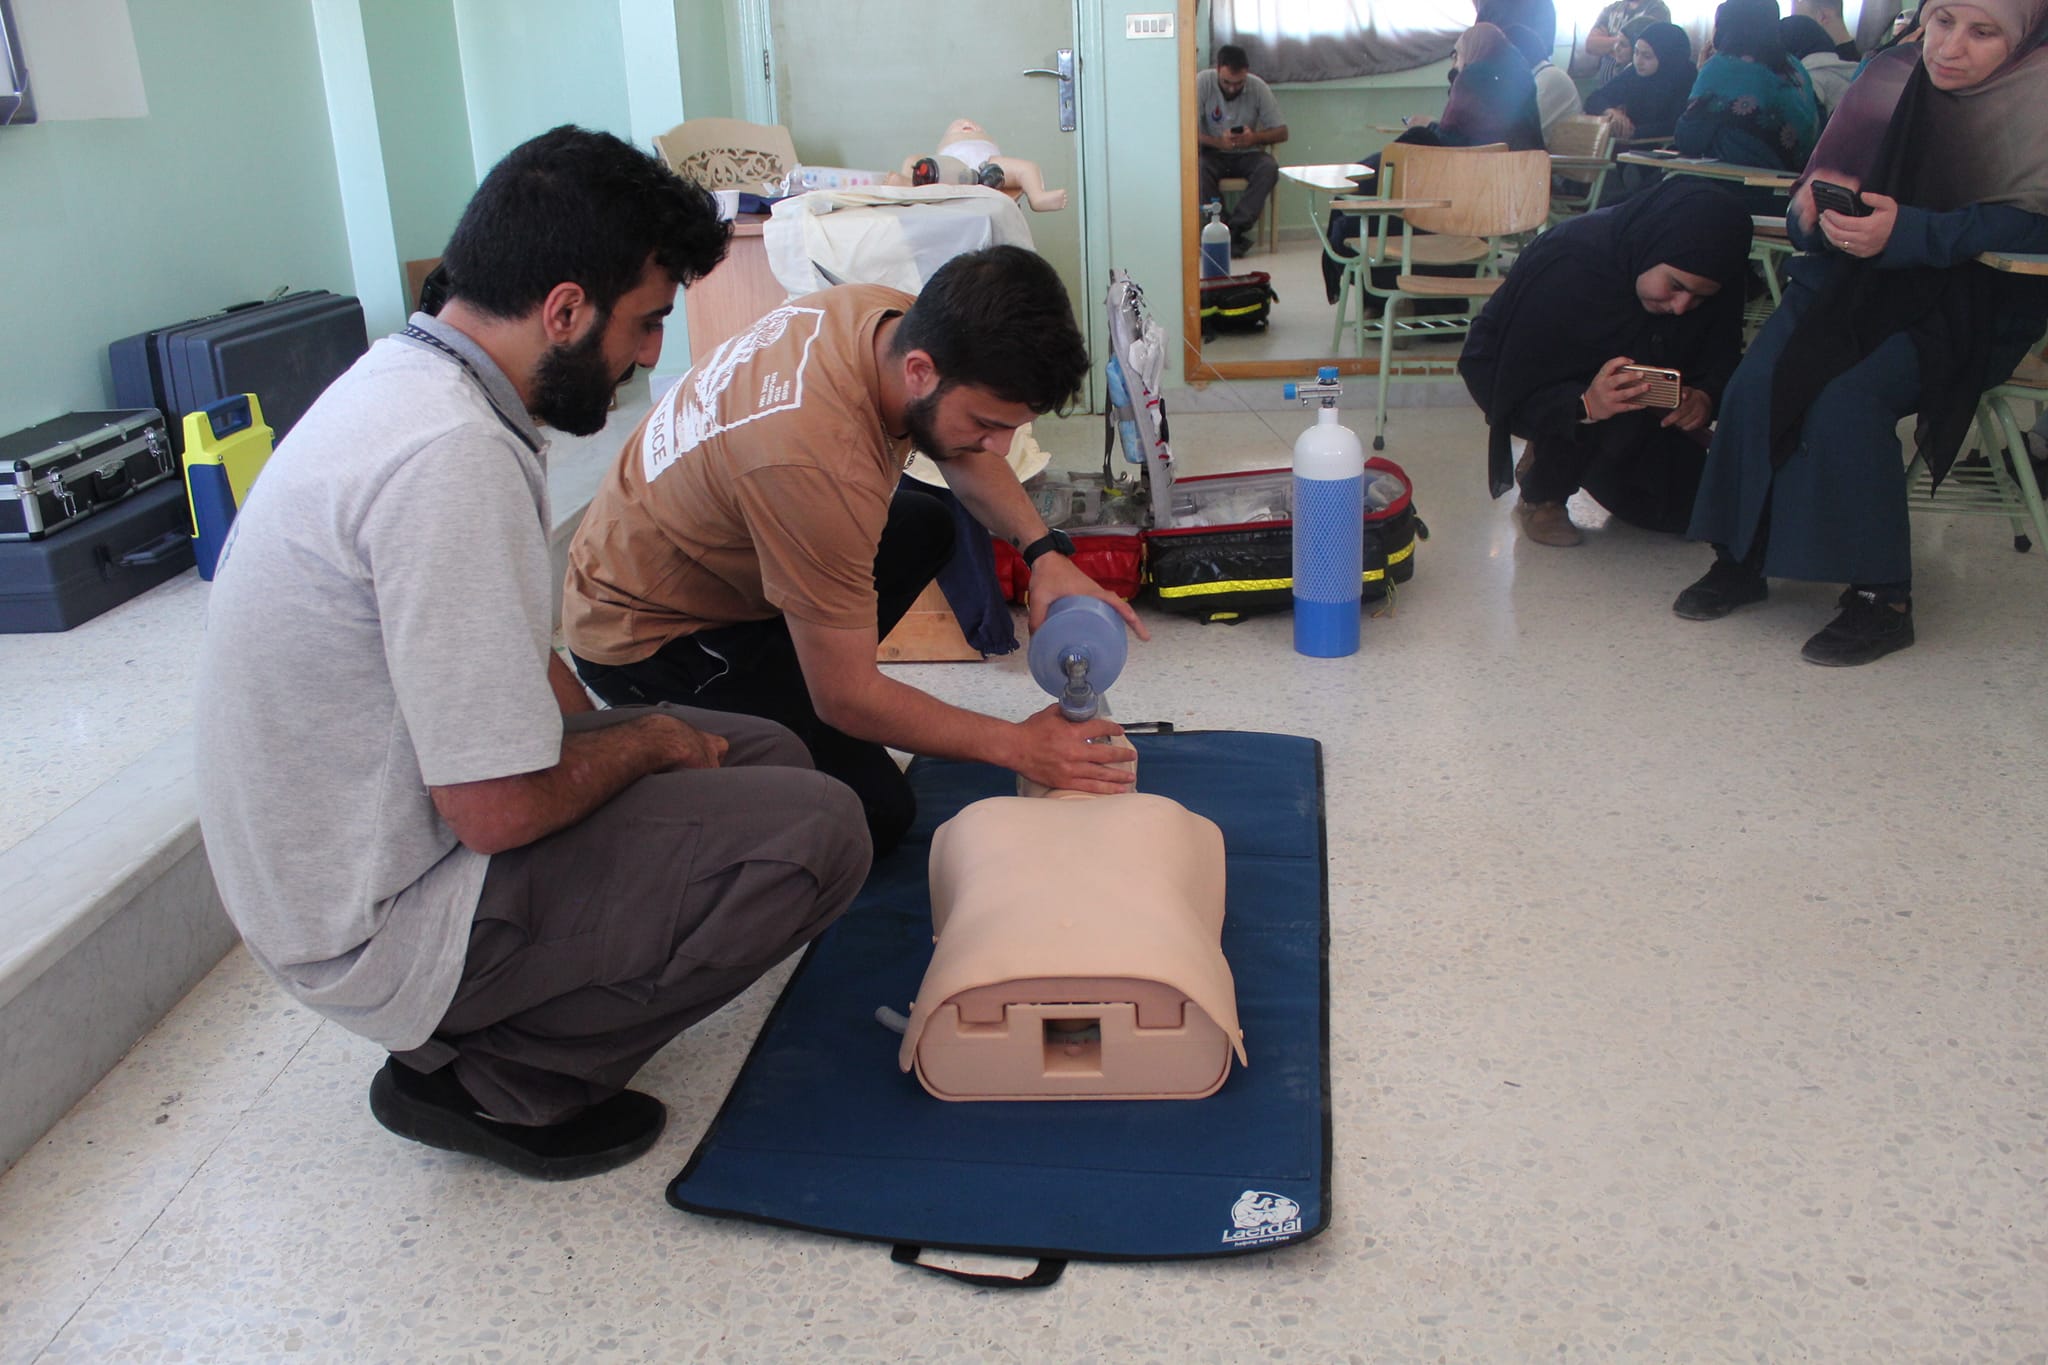 دورة اسعافات أولية (CPR) لطلاب معهد السيد عباس الموسوي في البقاع 